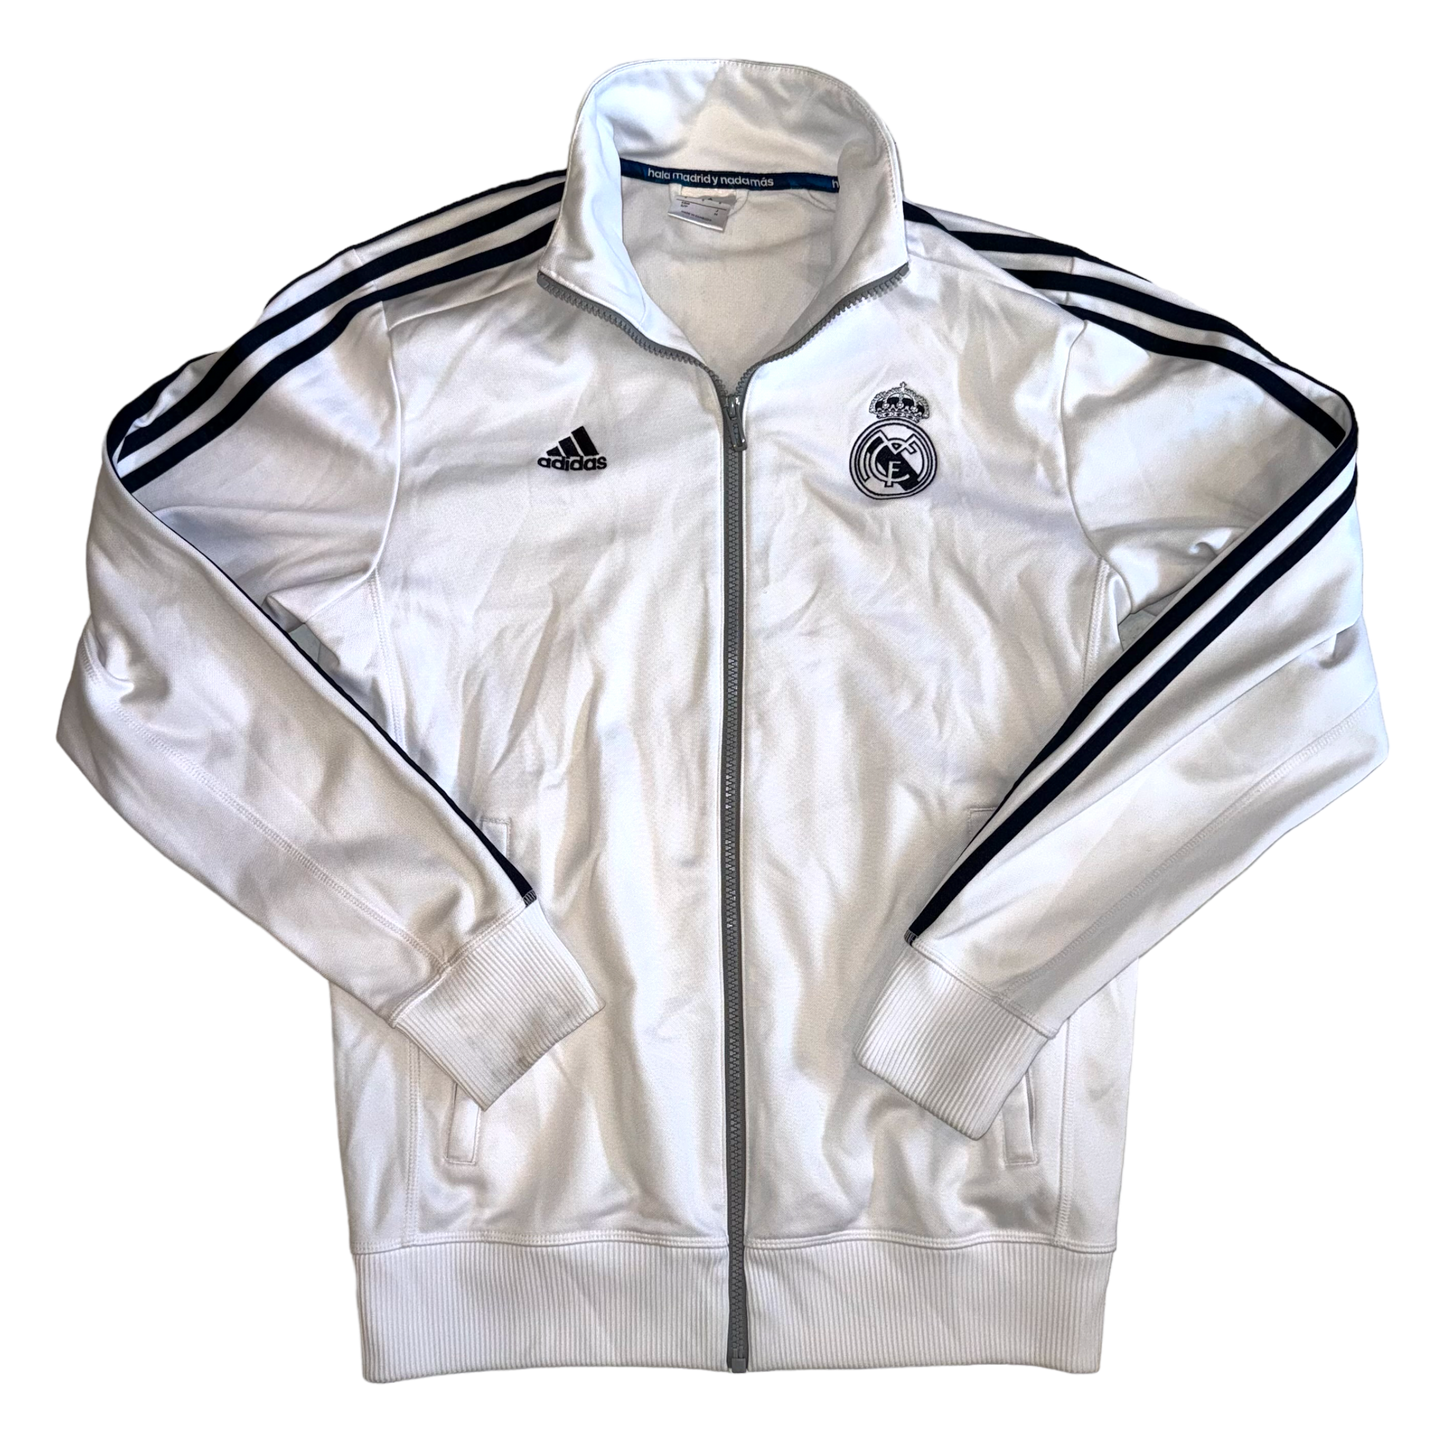 Adidas - Manchester United White Track Jacket